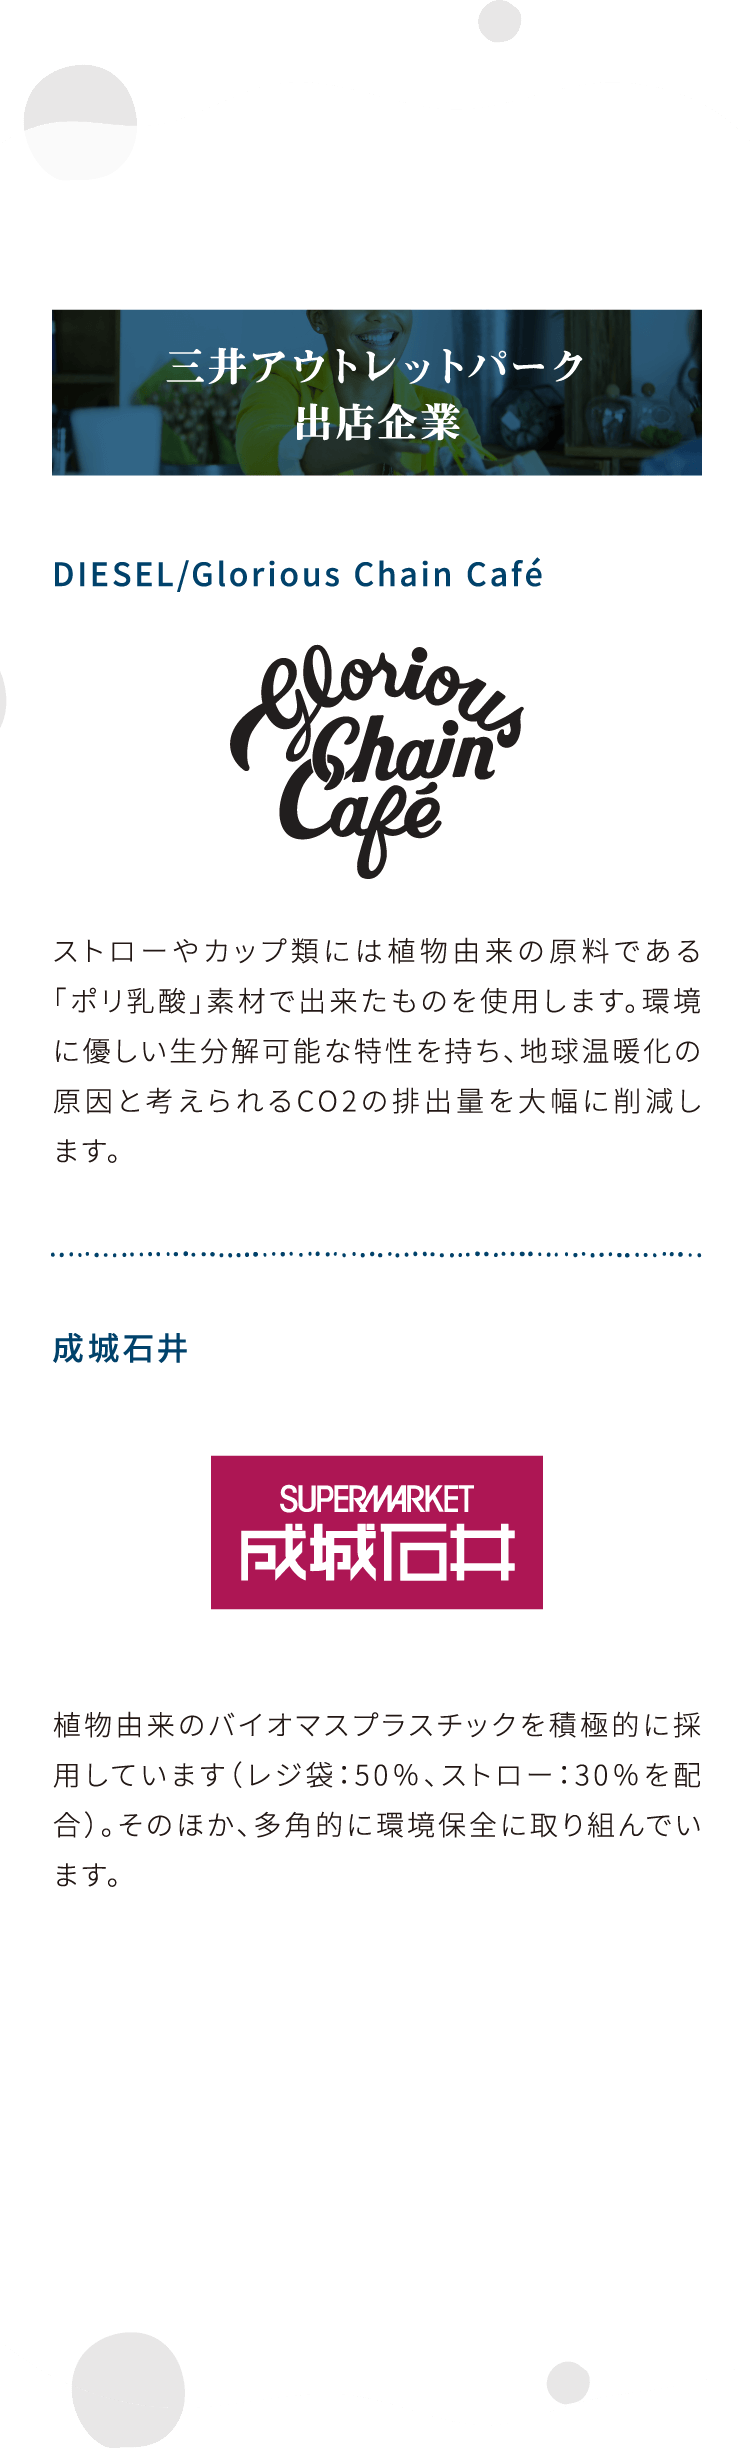 三井アウトレットパーク出店企業